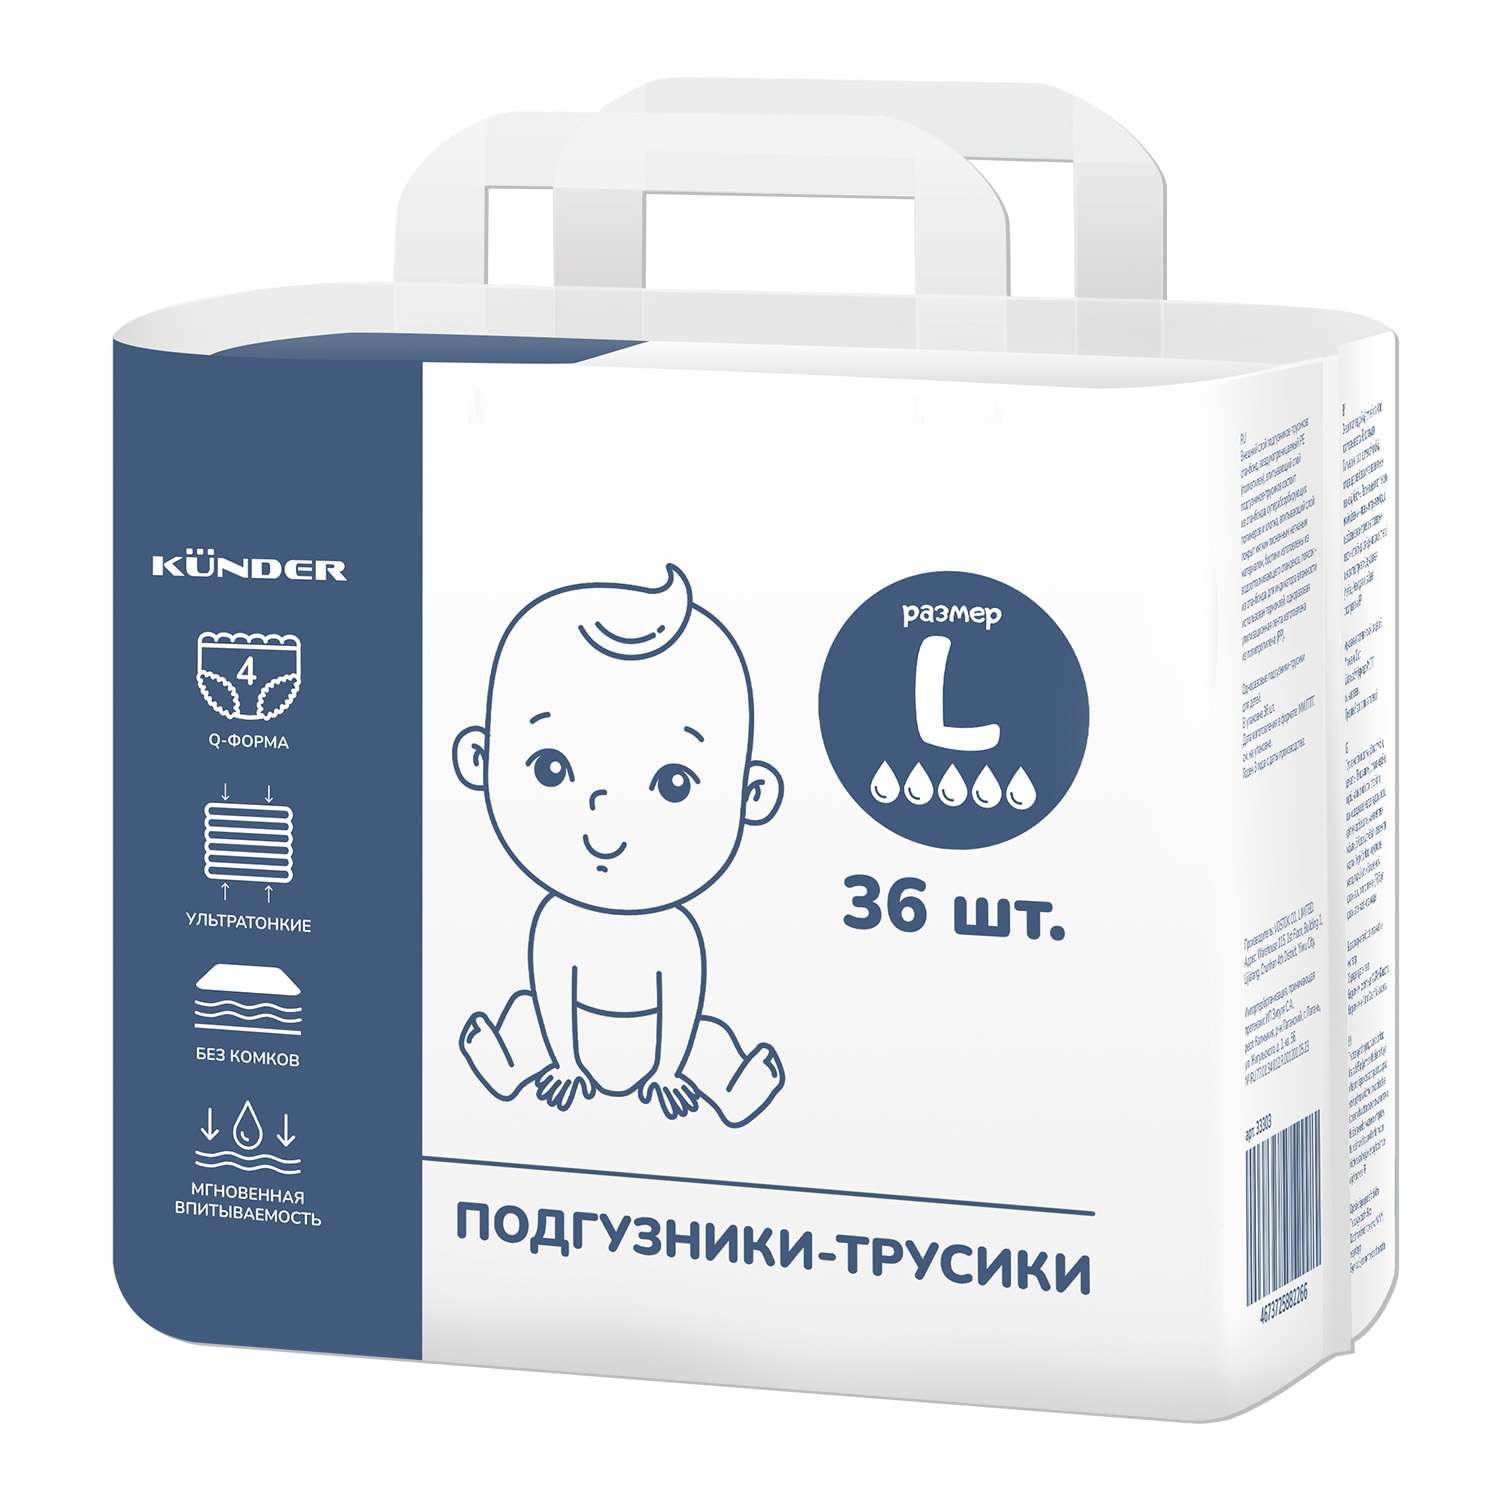 Подгузники-трусики Q форма KUNDER для новорожденных размер 4 (L) 9 - 14 кг (36 шт.) - фото 1